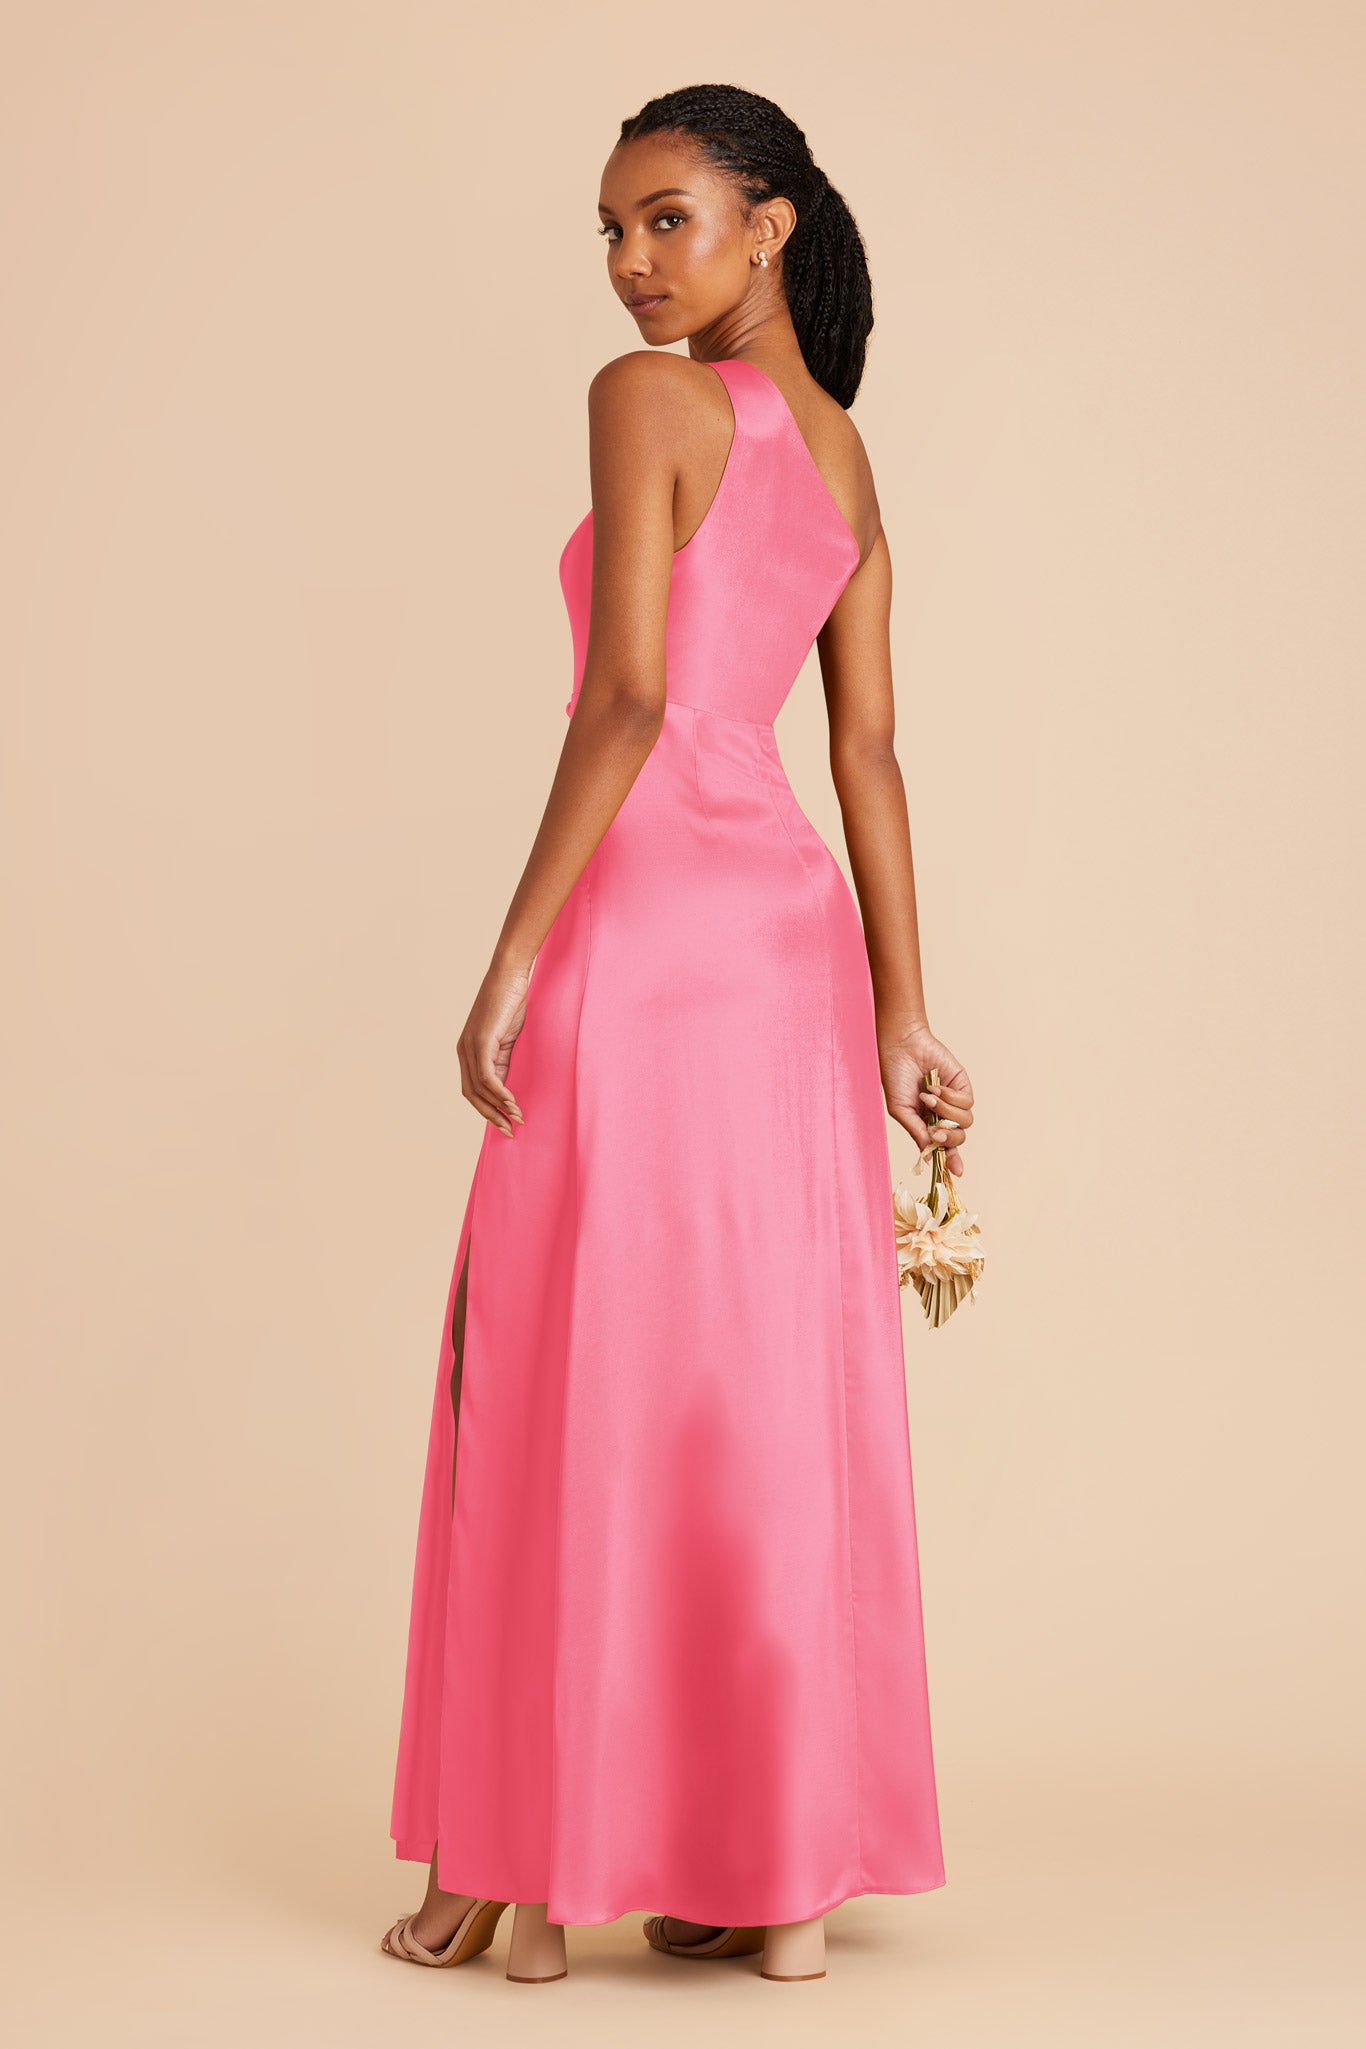 Bon Bon Pink Kira Matte Satin Dress by Birdy Grey